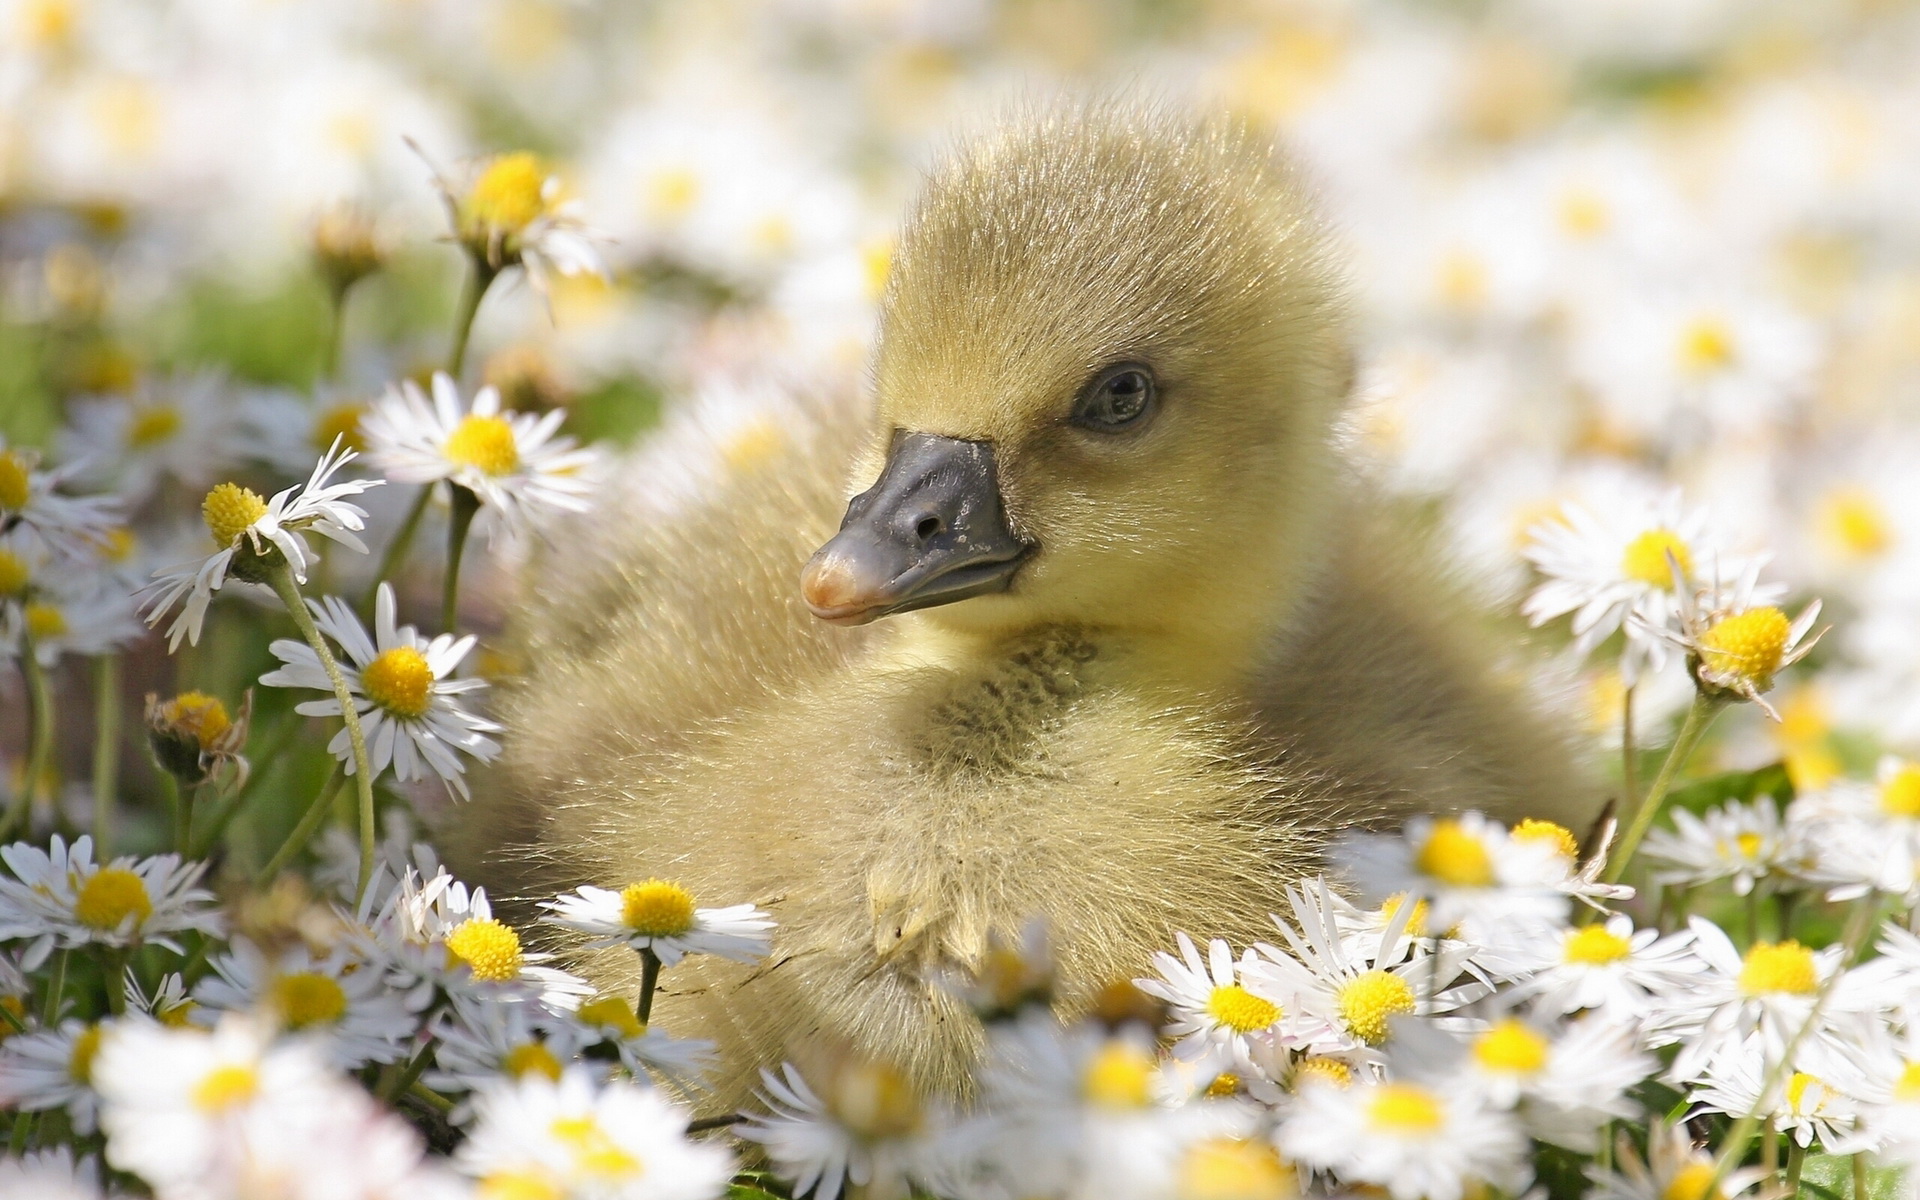 Baby Ducks In Flowers - HD Wallpaper 